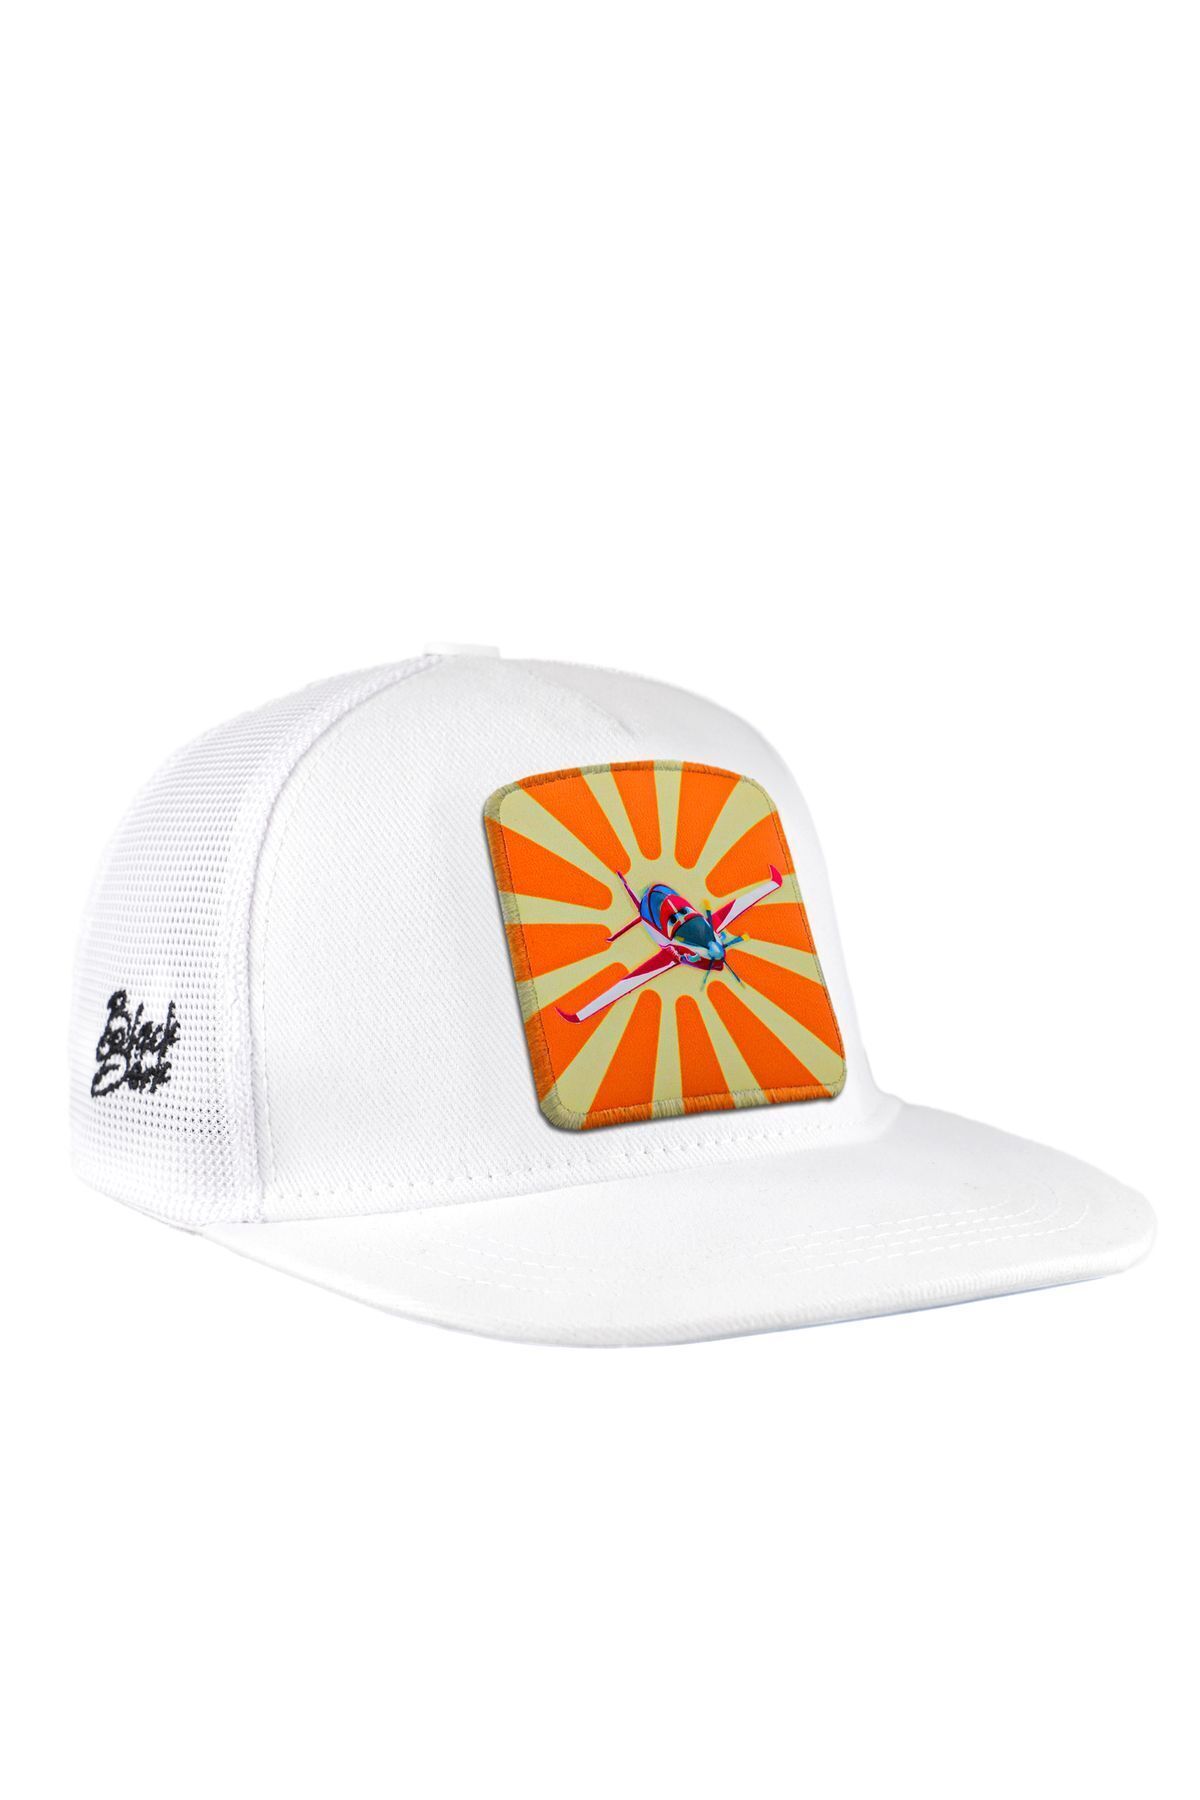 BlackBörk V1 Trucker Hip Hop Kids Güneş Hürkuş Lisanlı Beyaz Çocuk Şapka